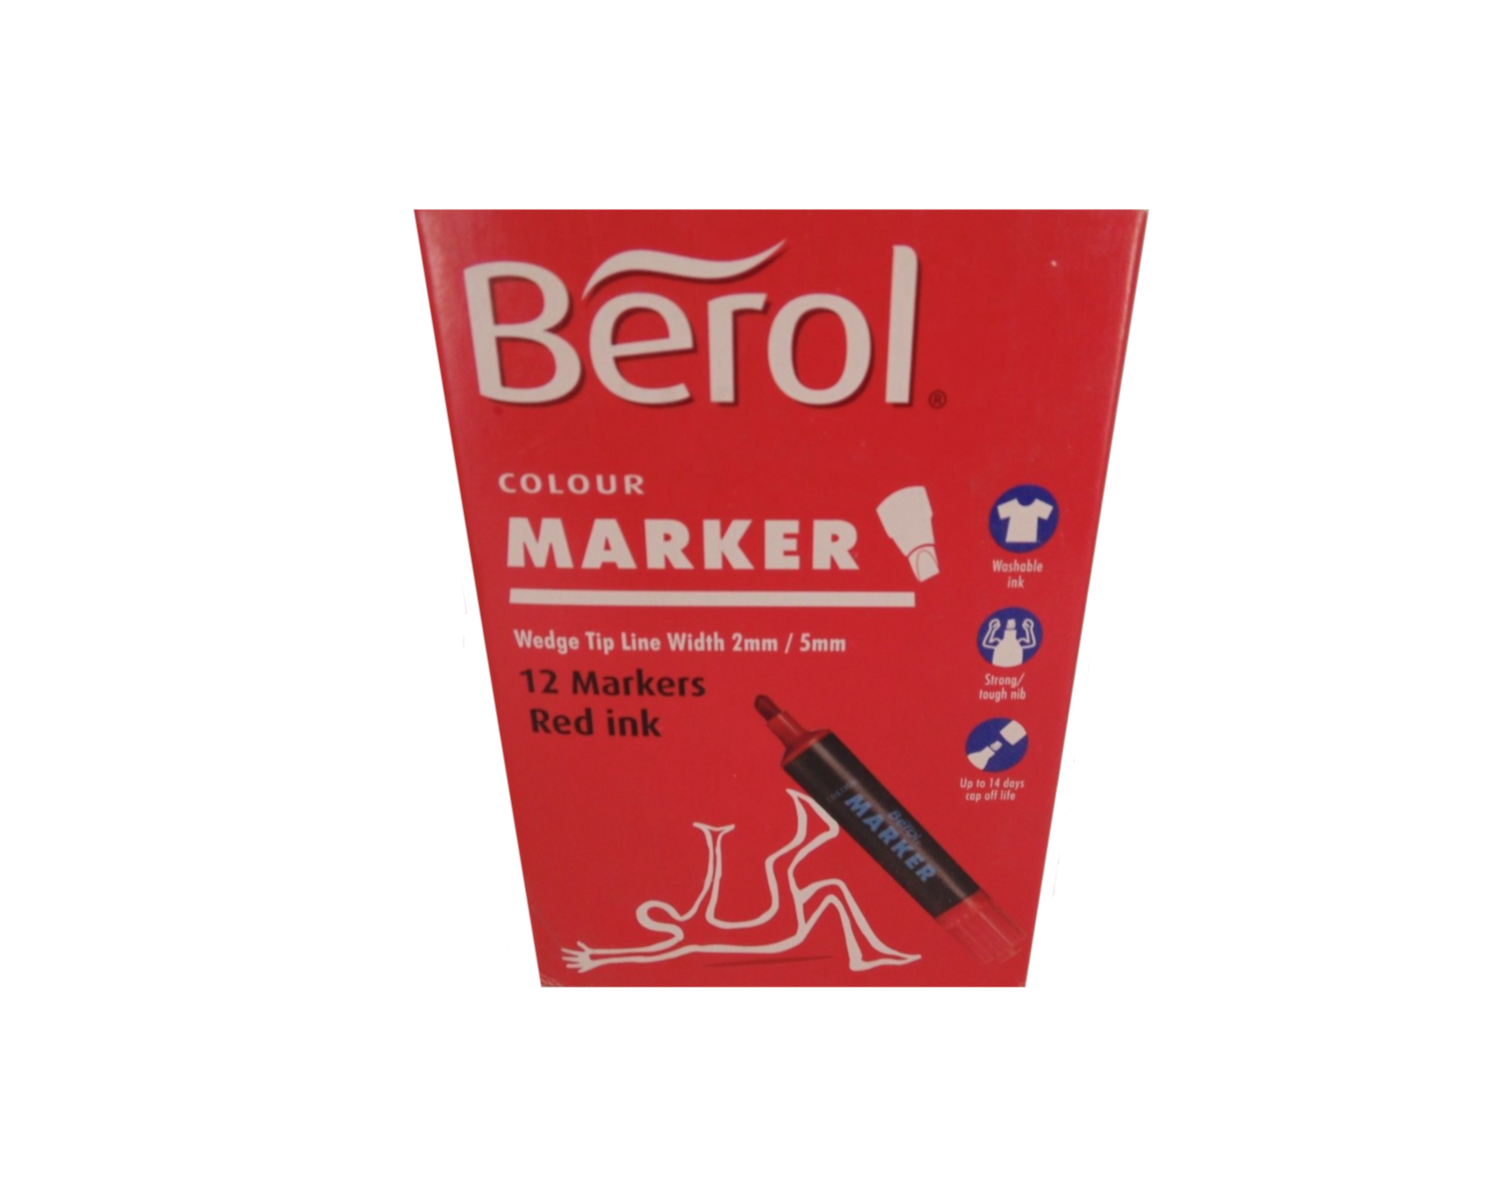 BEROL COLOUR MARKER RED INK X 12 SANFORD 5010215304324
LOT PACK SET DRAW ART SKETCH OFFICE SHOP SCHOOL COMASOUND KARTEL